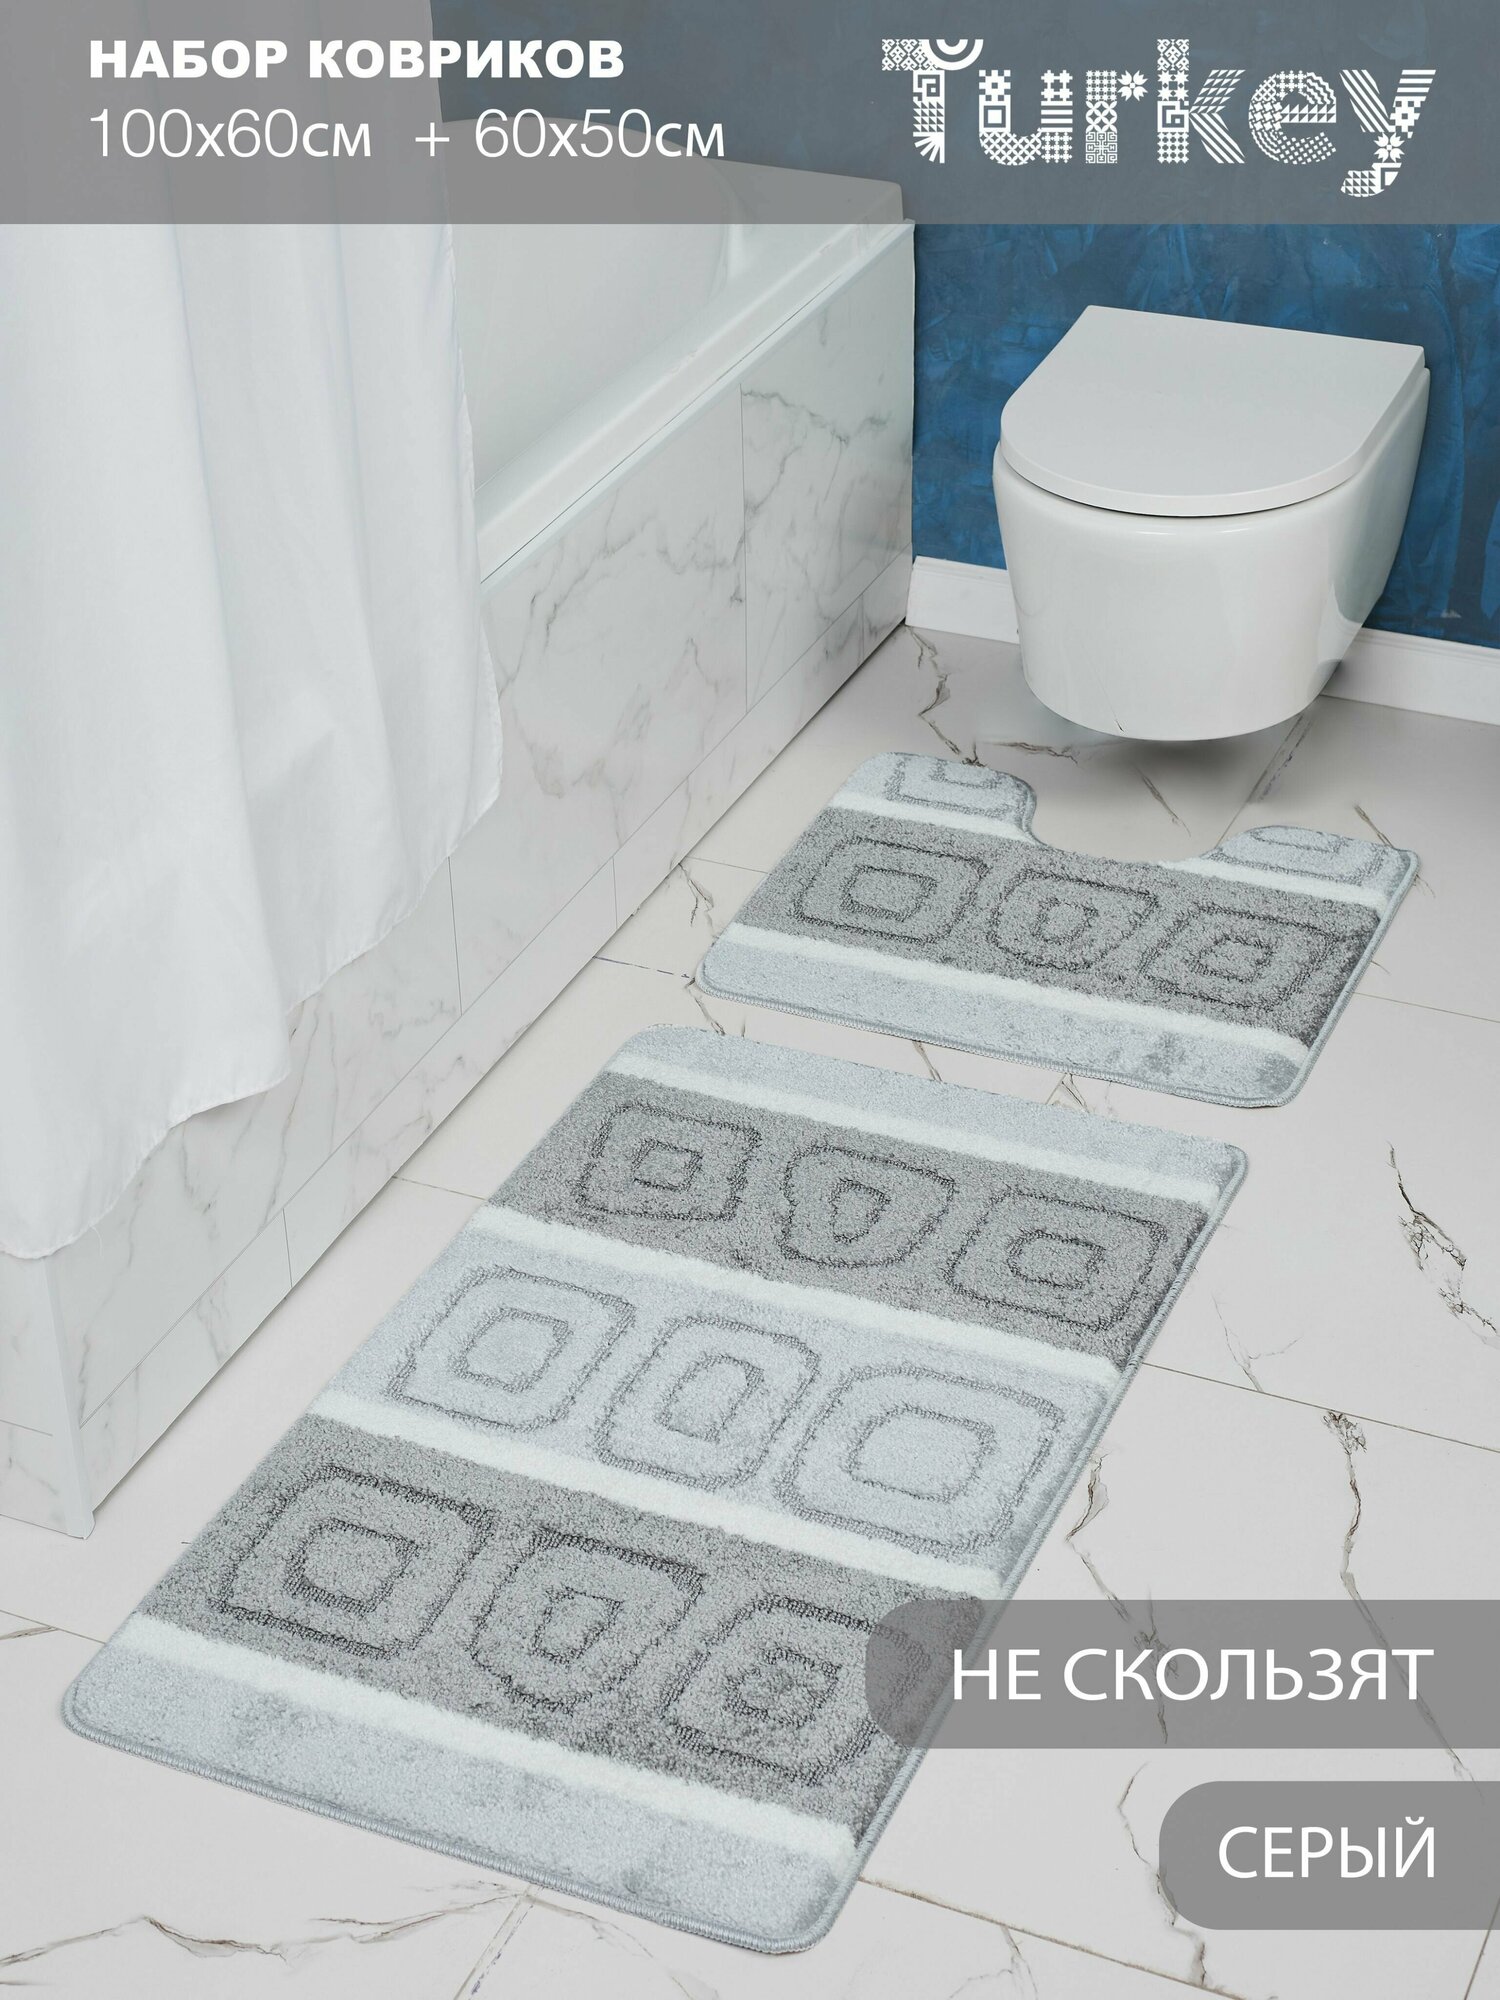 Набор противоскользящих ковриков для ванной и туалета, серый, Solin 100*60+50*60, 2 шт.